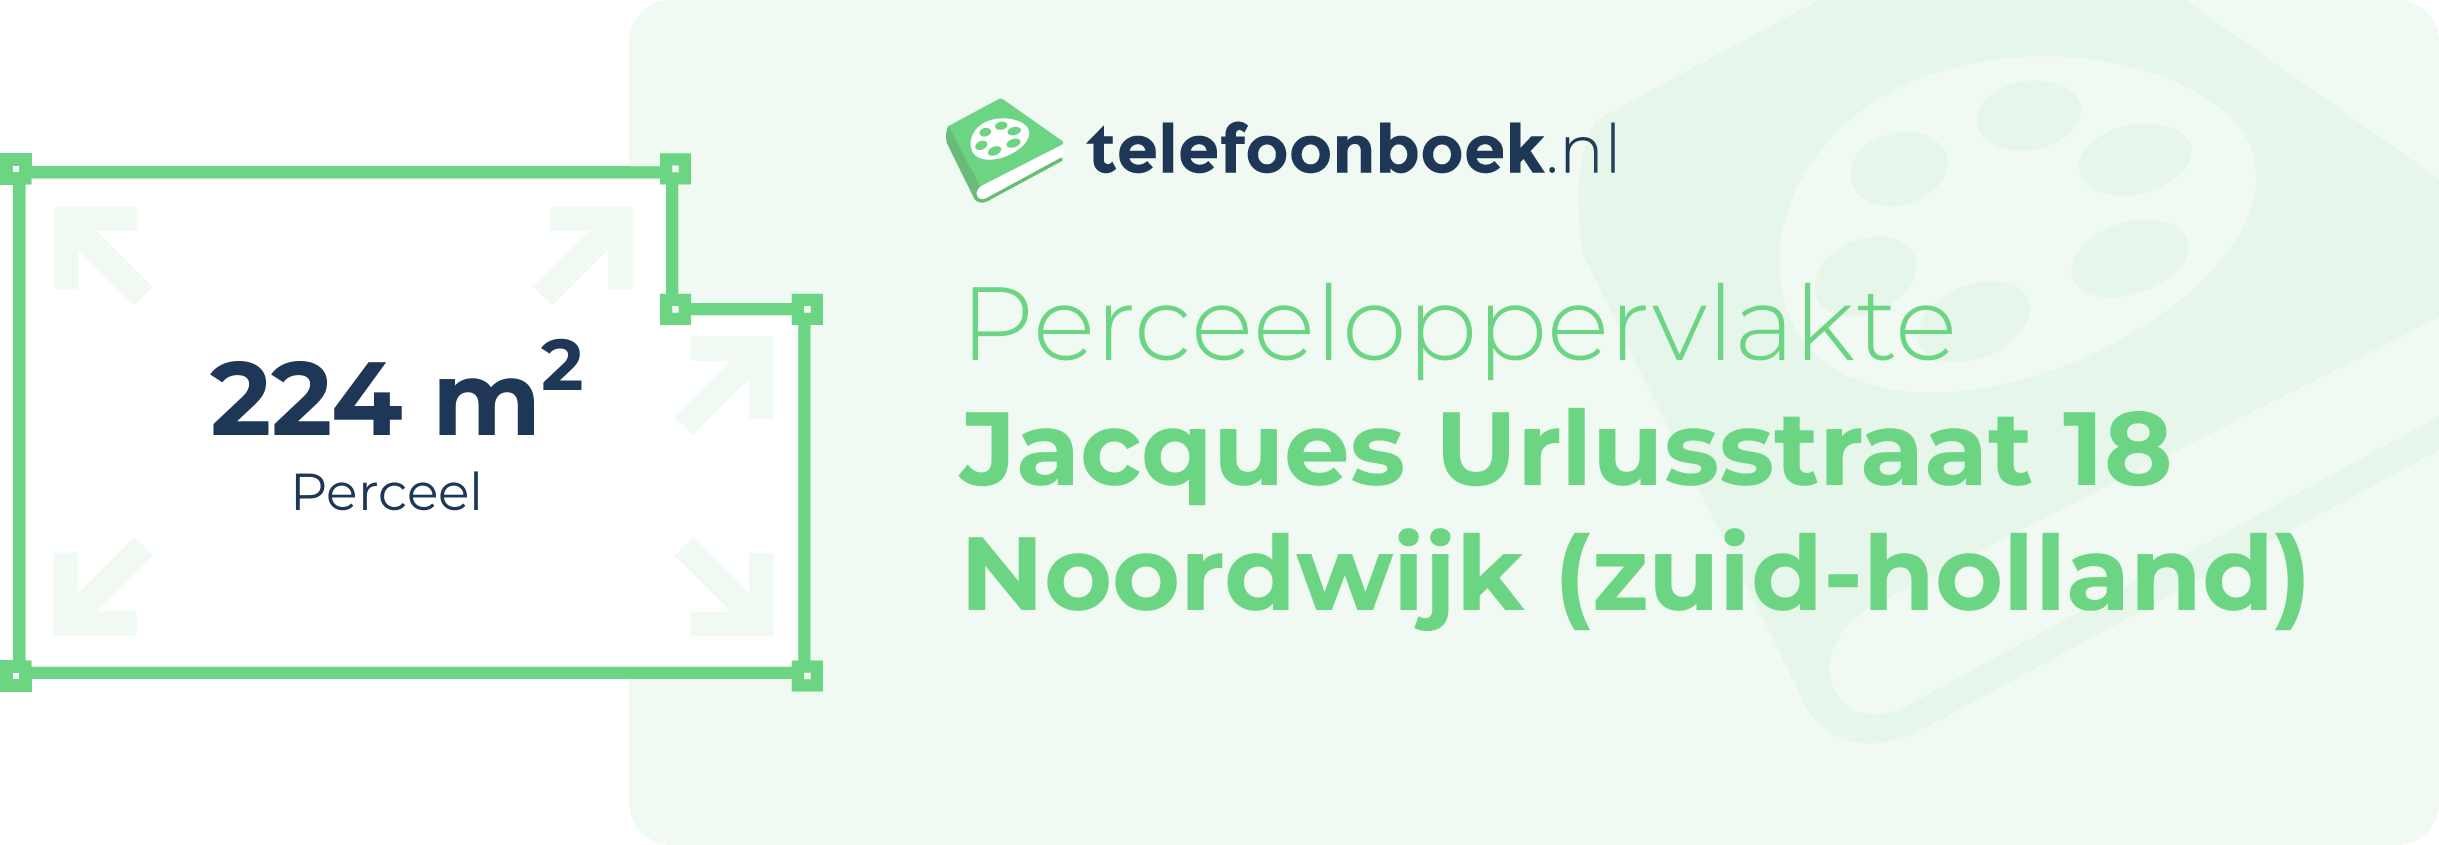 Perceeloppervlakte Jacques Urlusstraat 18 Noordwijk (Zuid-Holland)